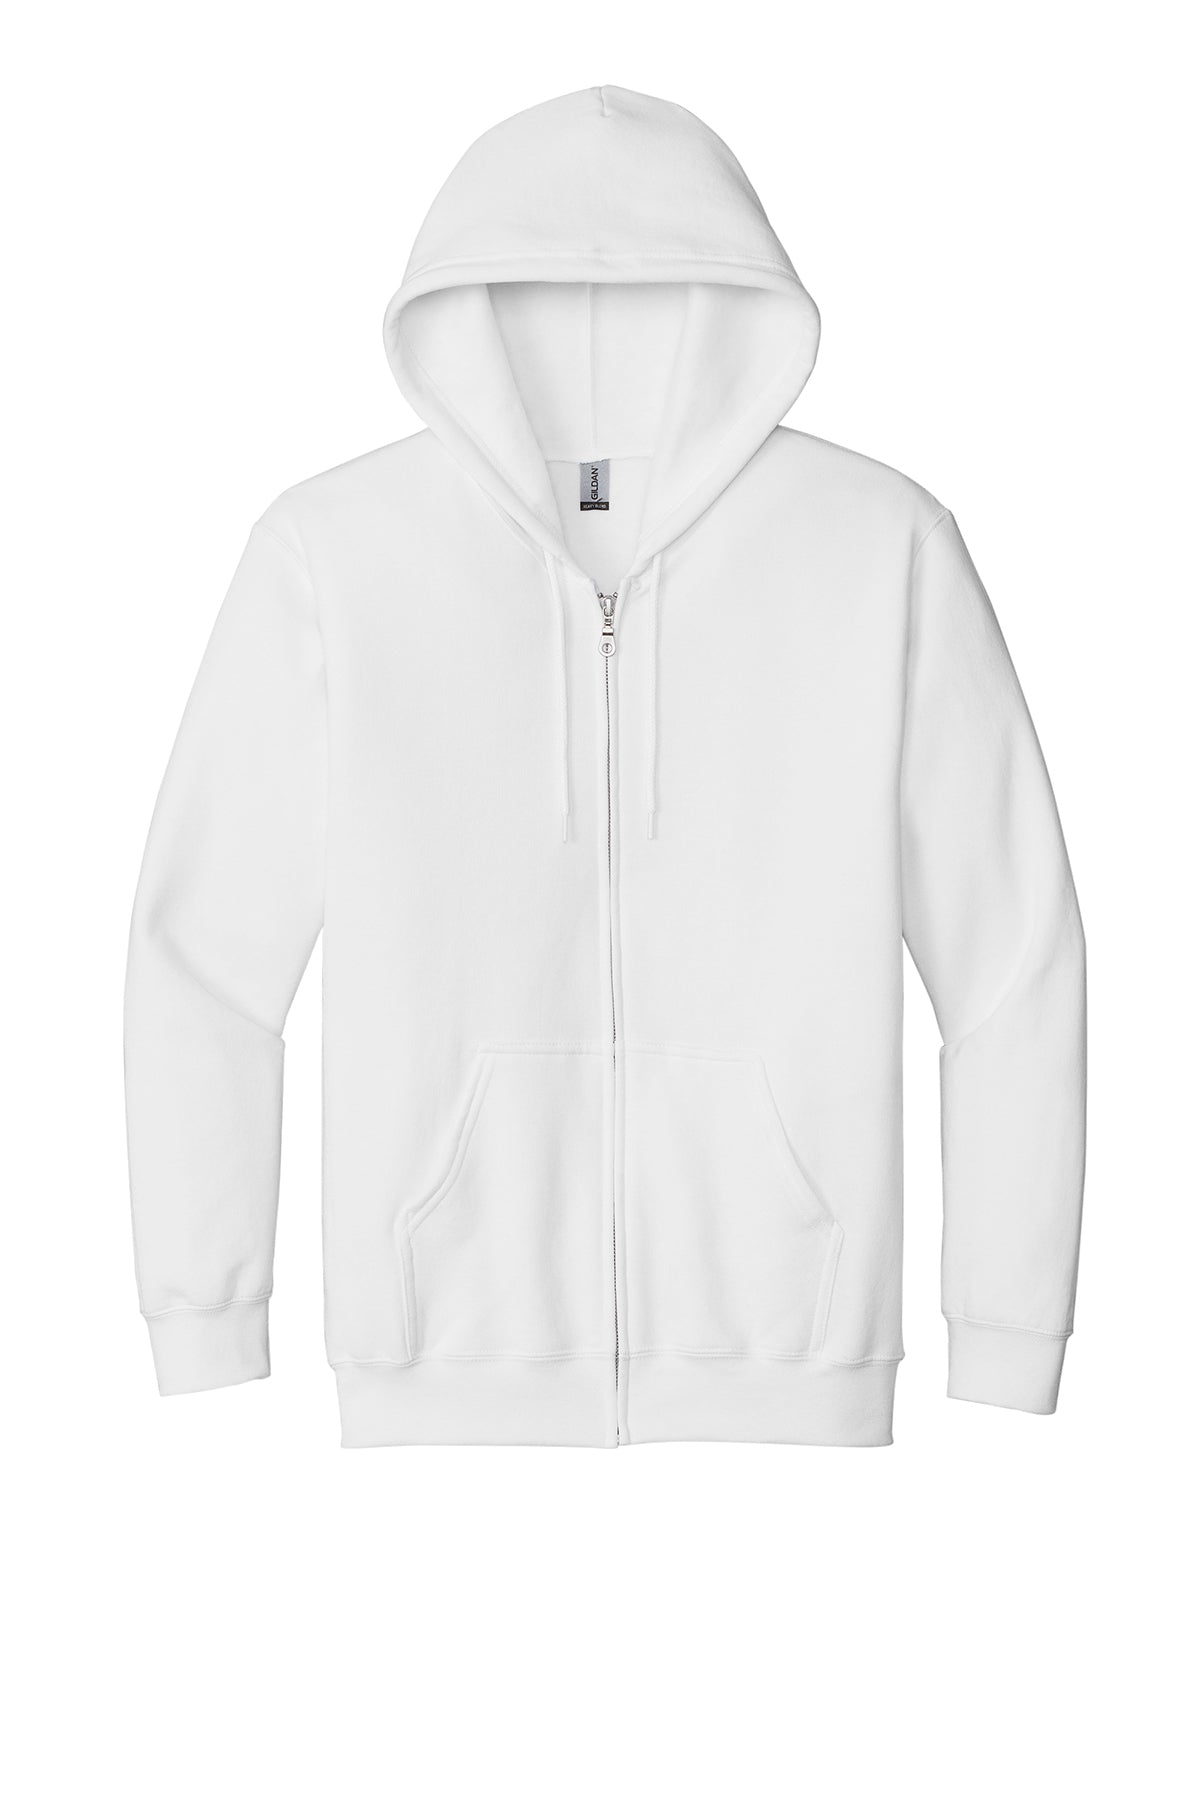 Gildan Full-Zip Hooded Sweatshirt Mens/Unisex Hoodies White